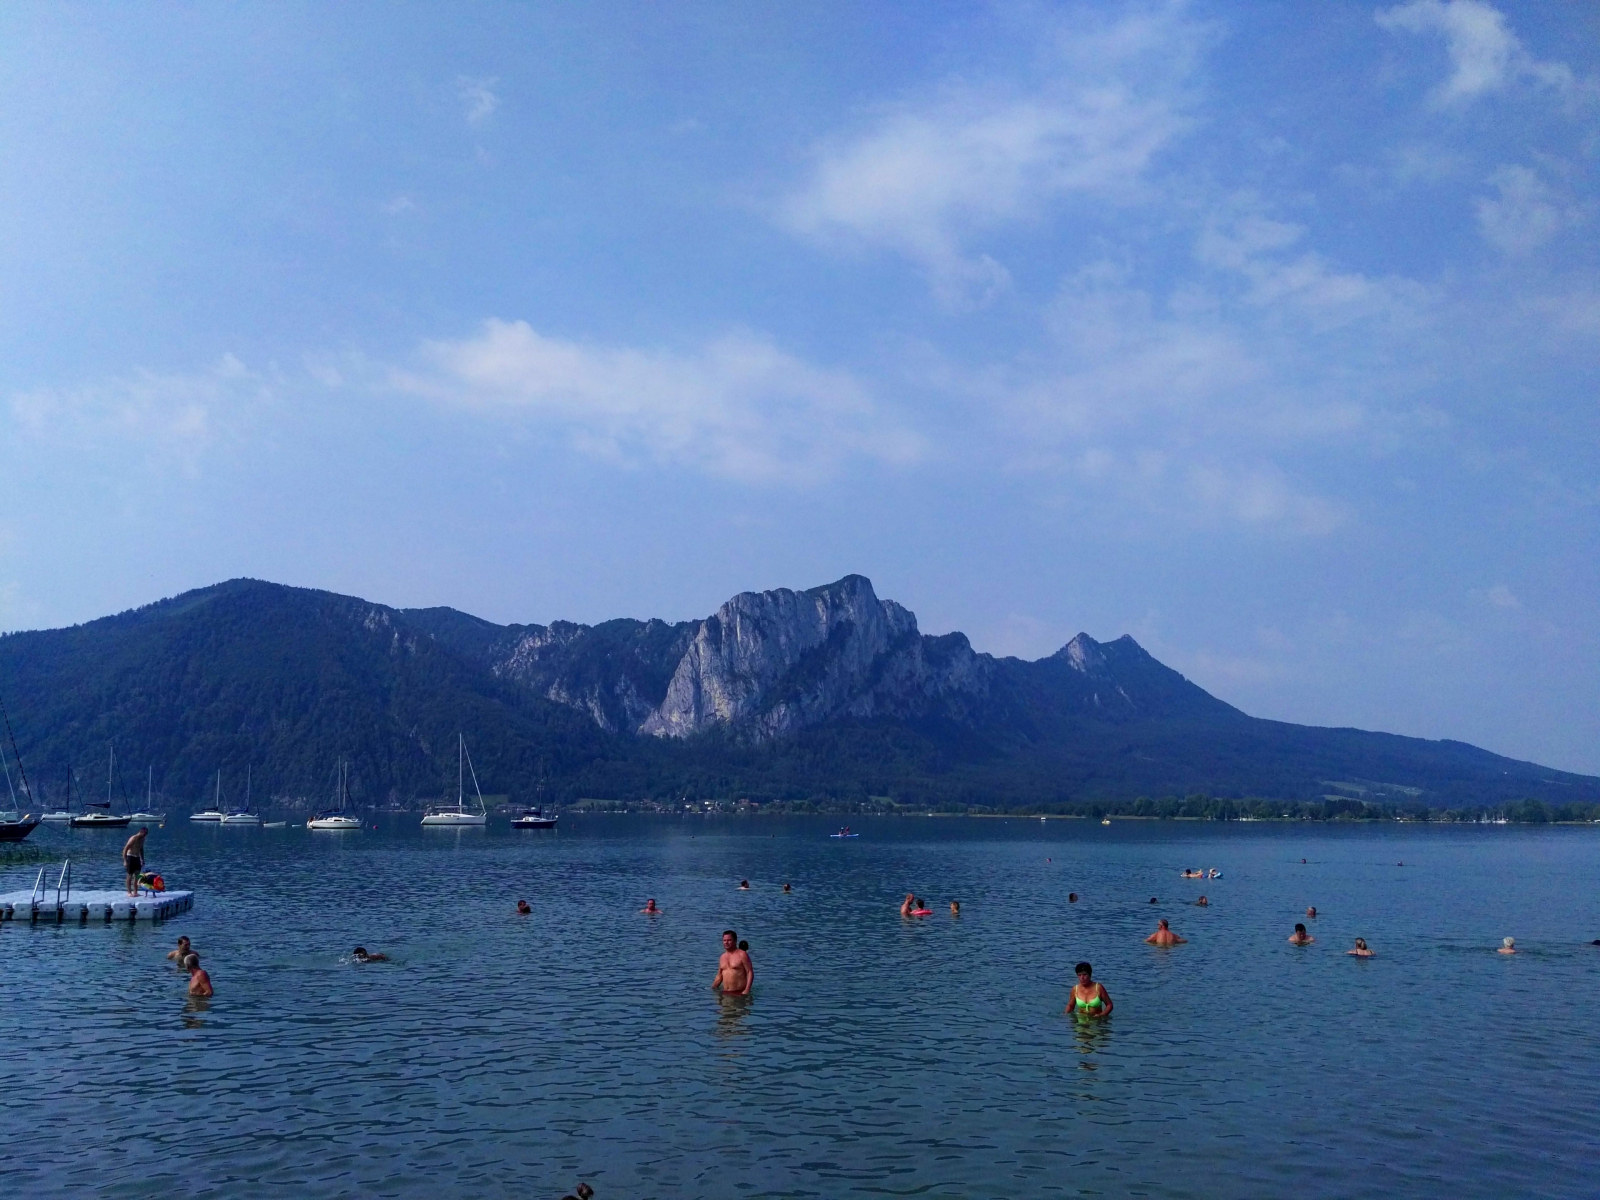 Poslední zastávka cestou zpátky, další jezero v Rakousku jehož název si nepamatuju